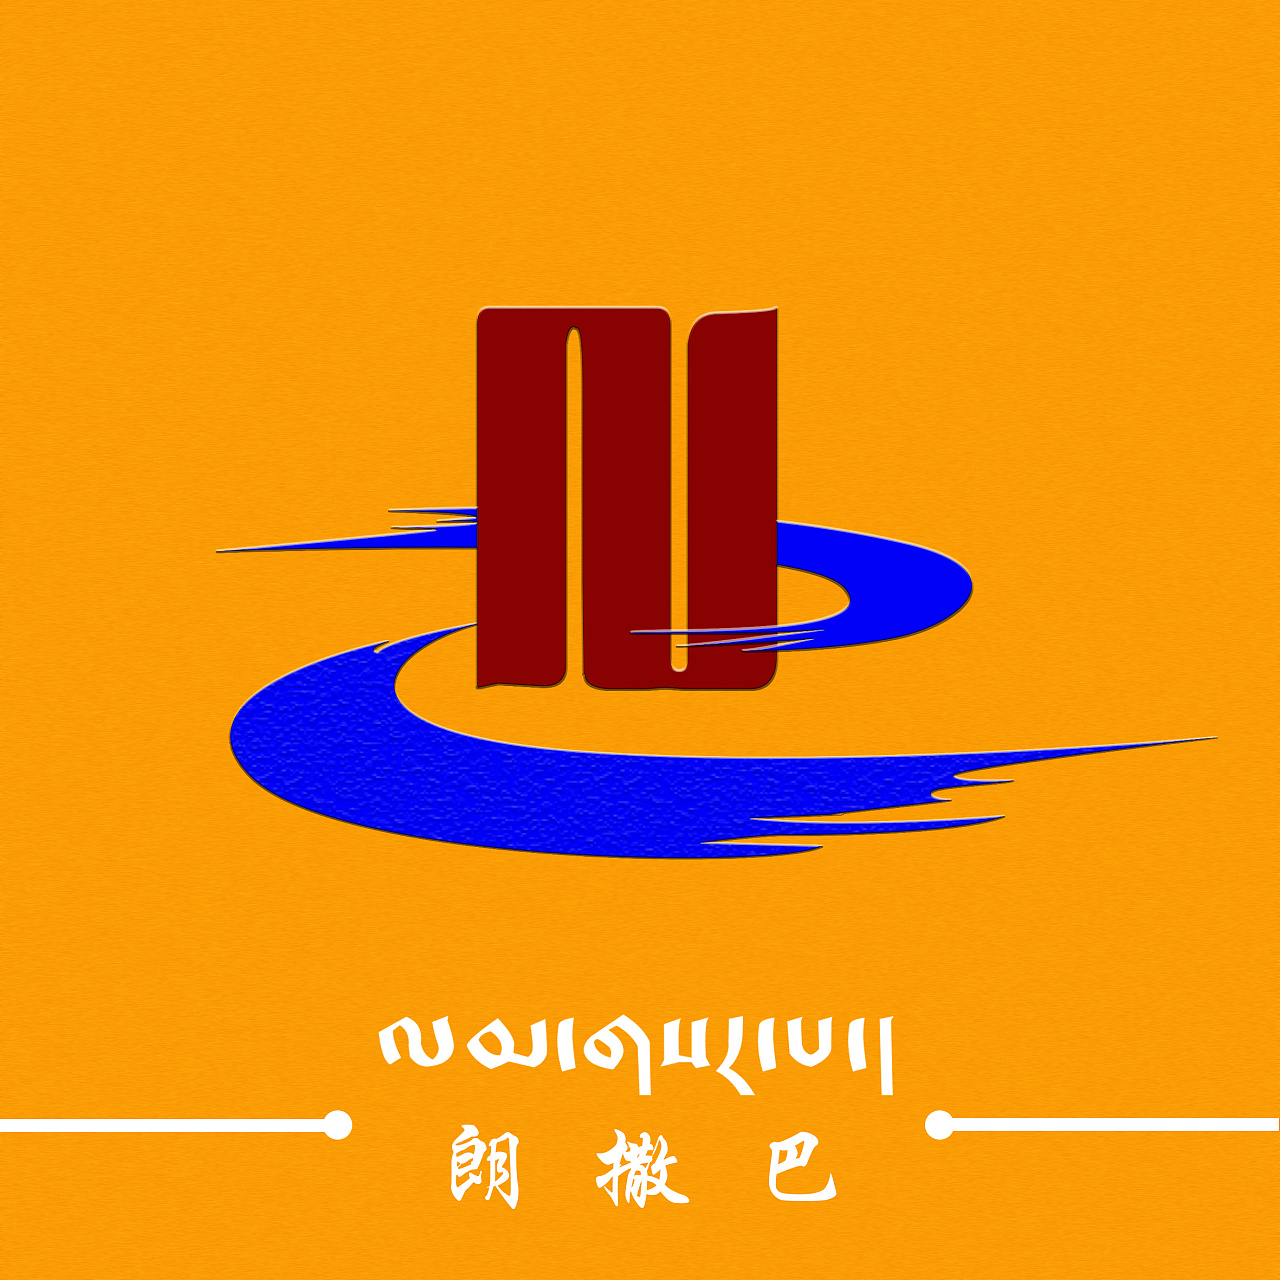 藏式logo设计